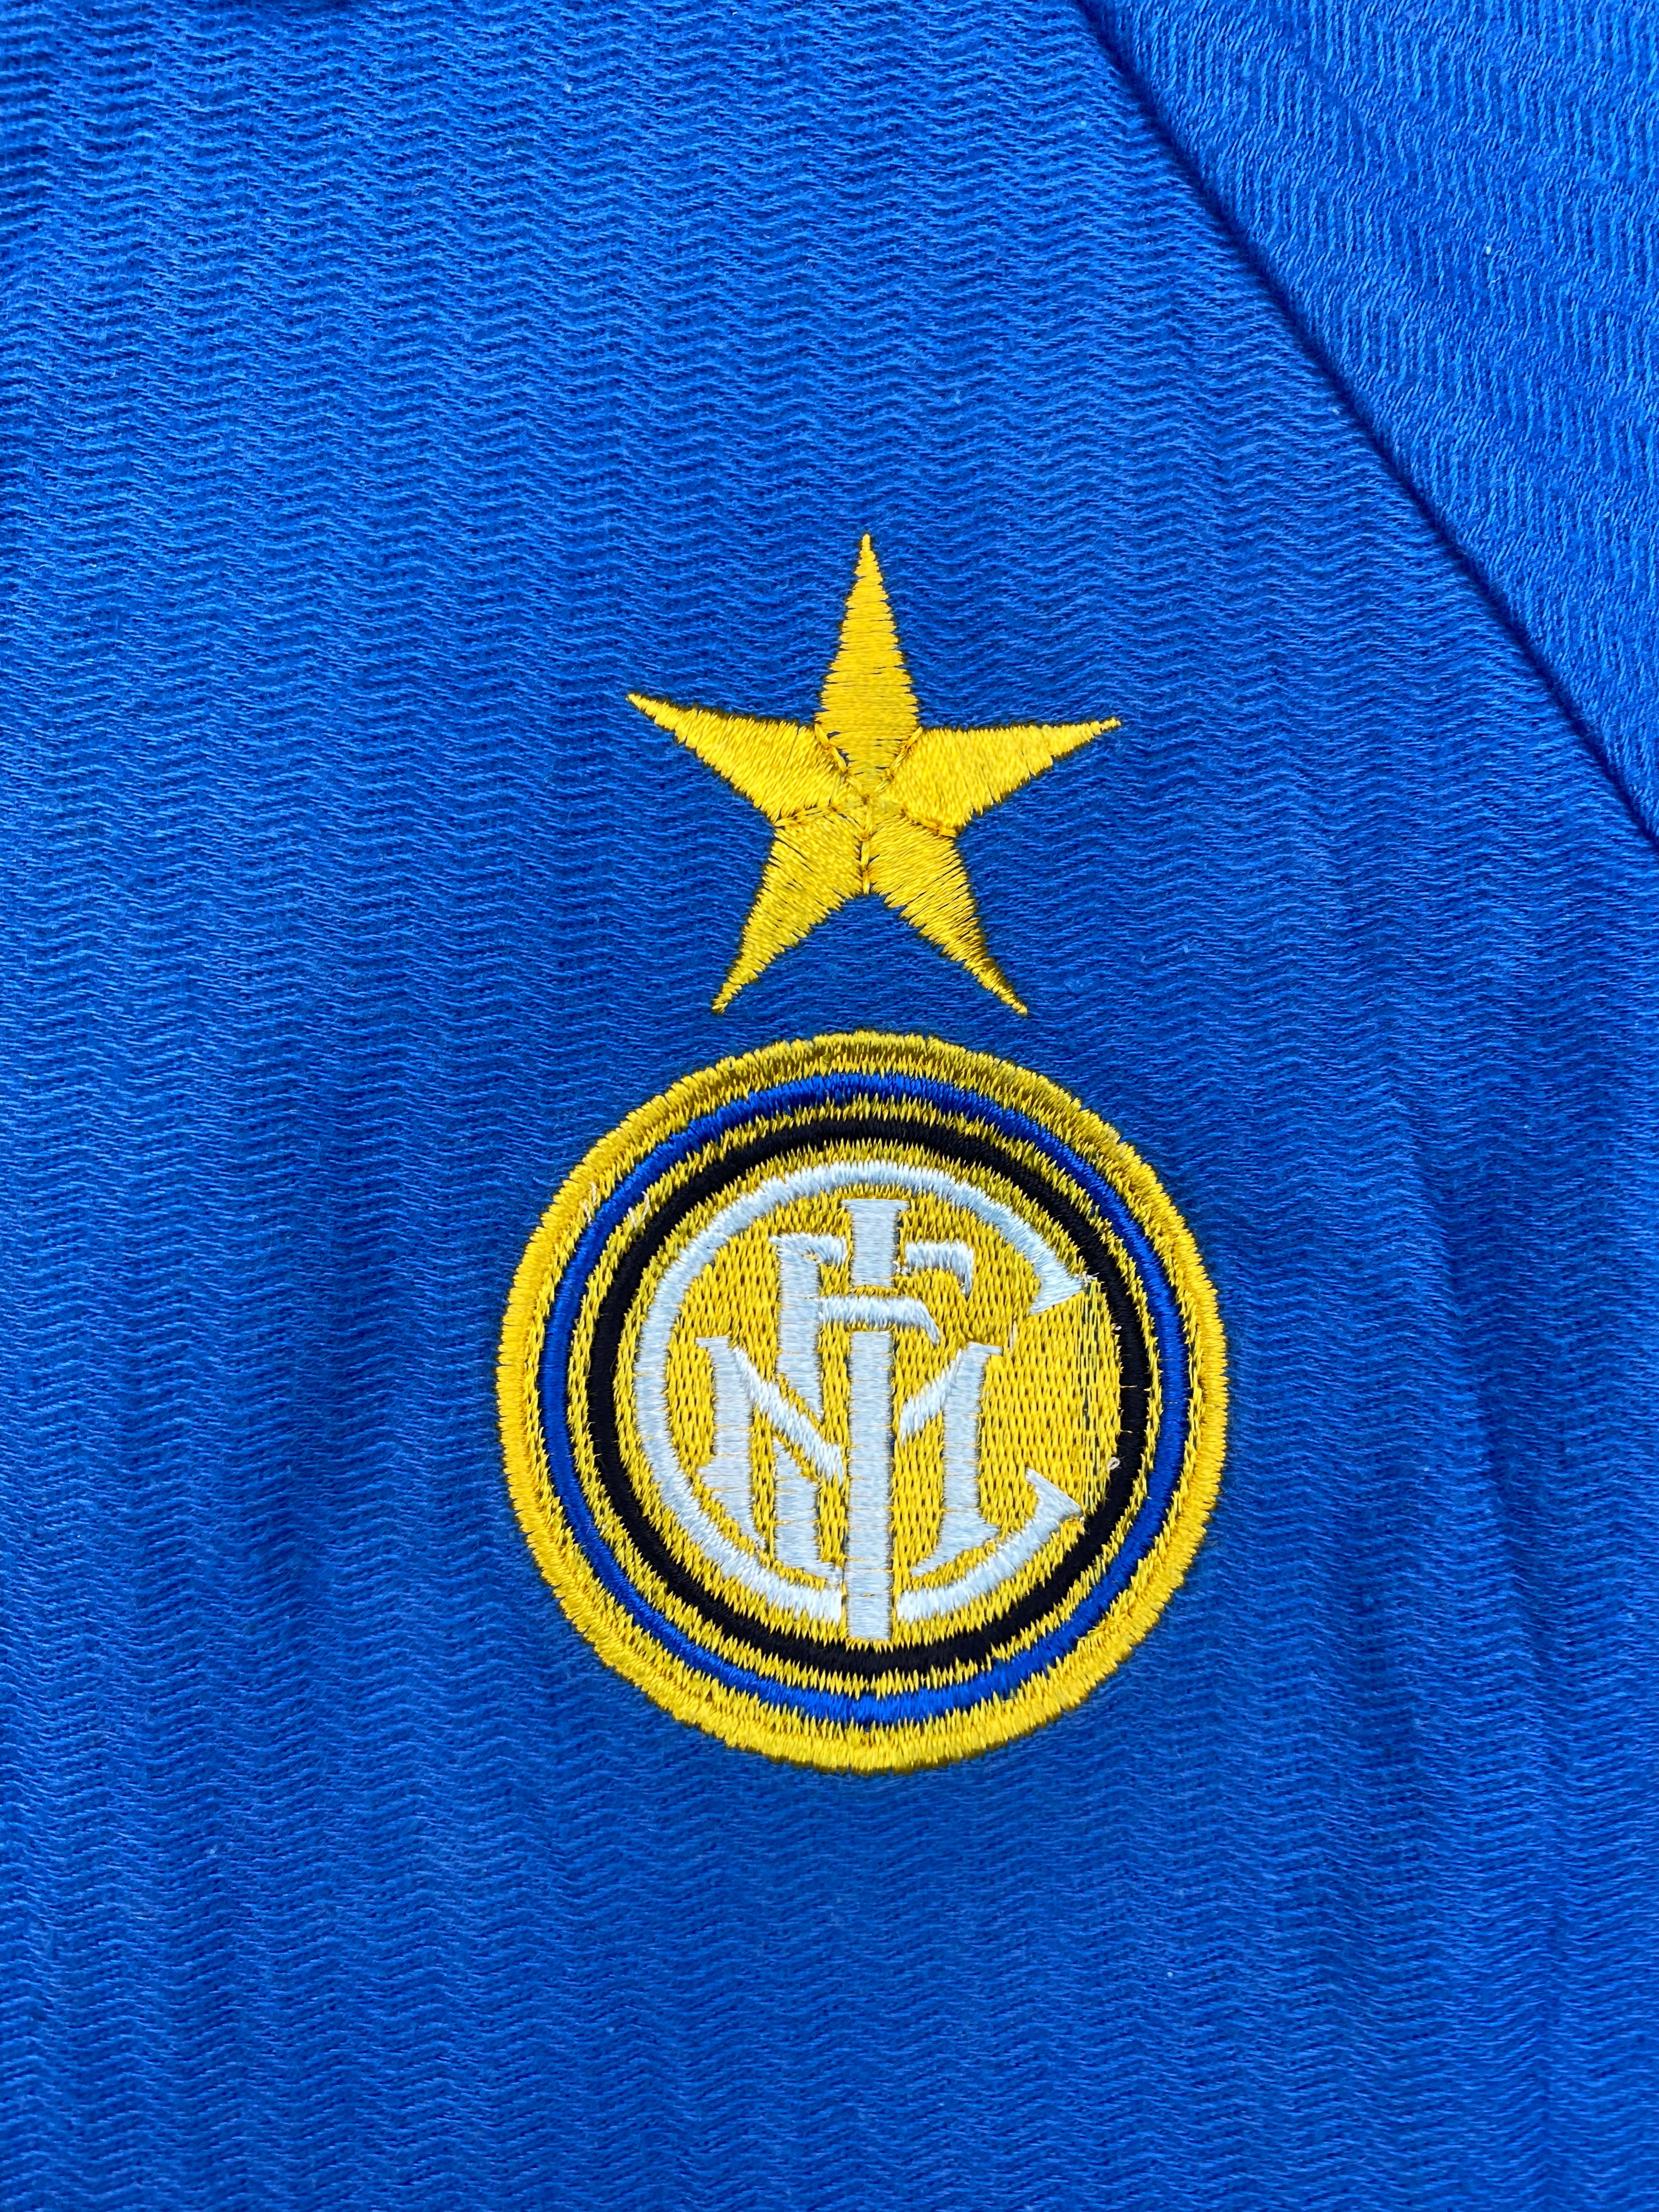 1995/96 Inter Milan Training Shirt (L) 9/10